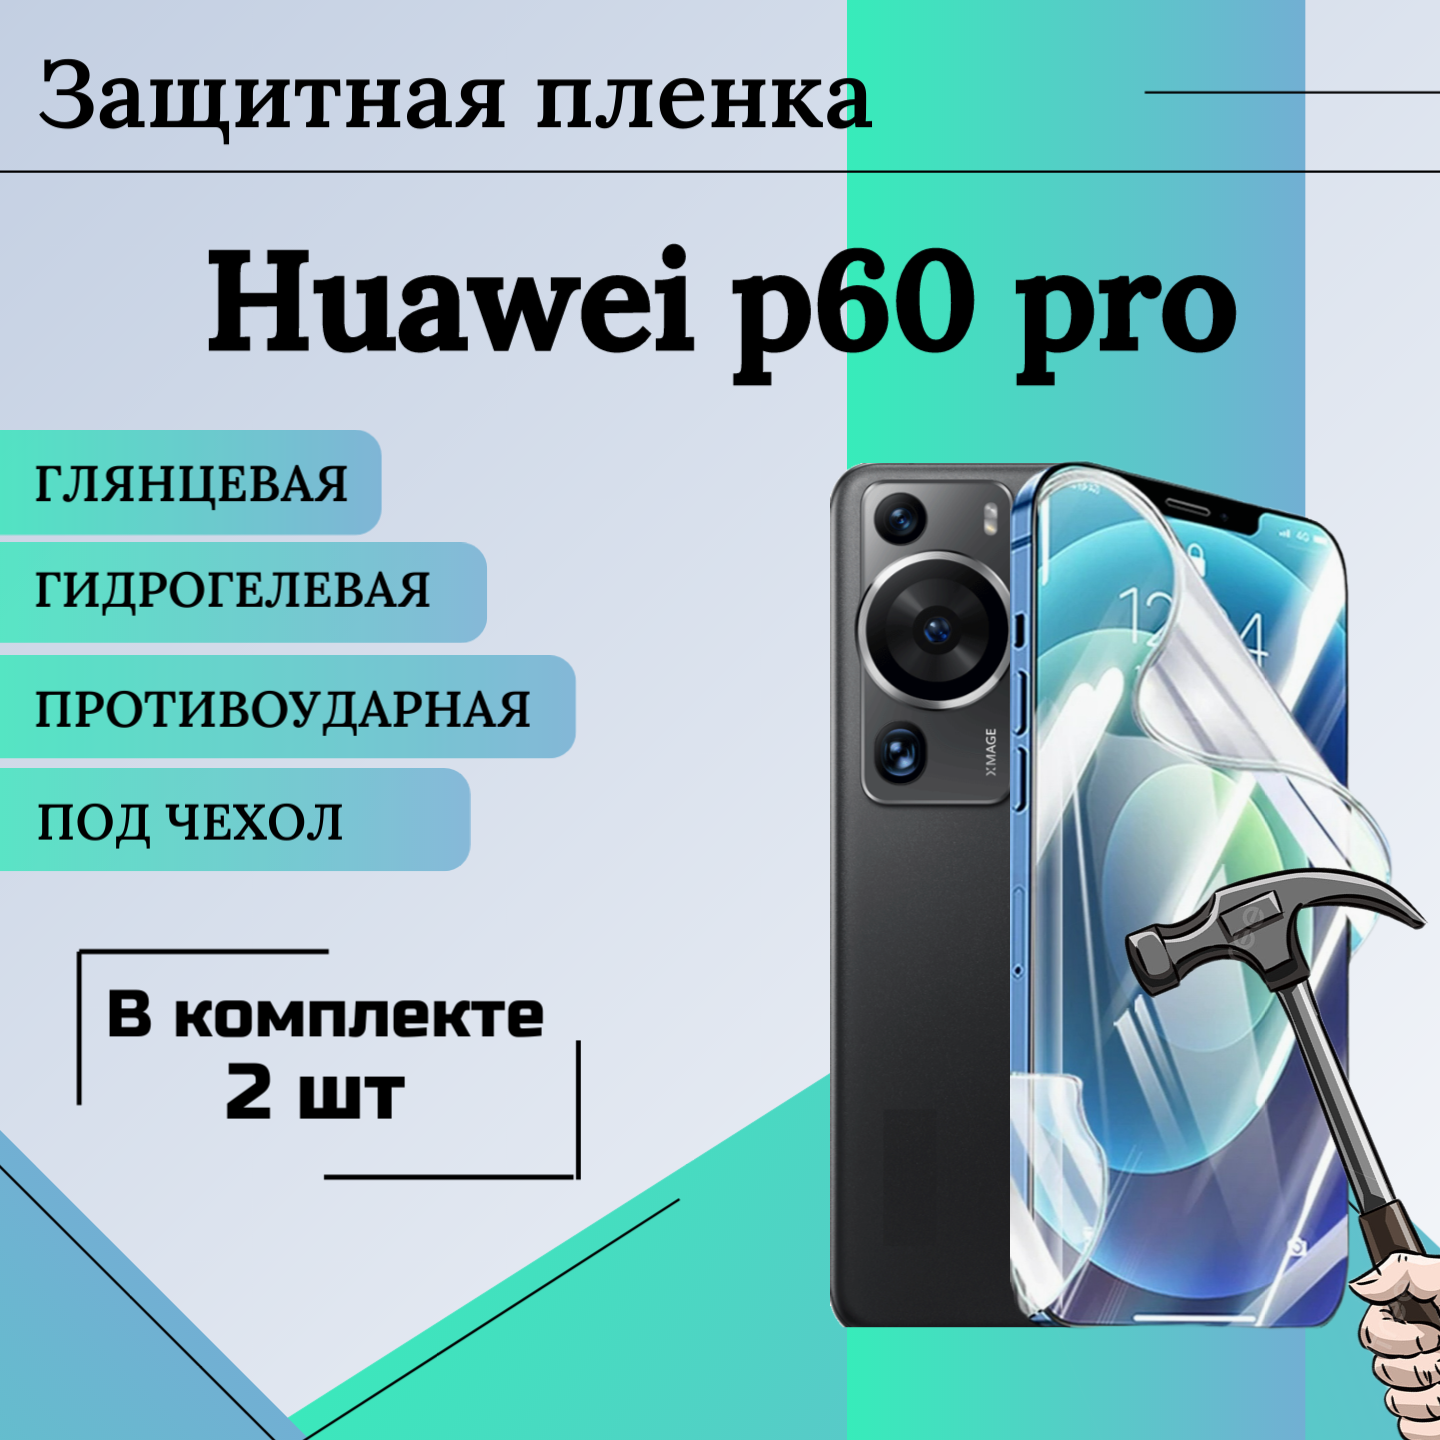 Гидрогелевая защитная пленка для Huawei p60 pro глянцевая под чехол 2шт